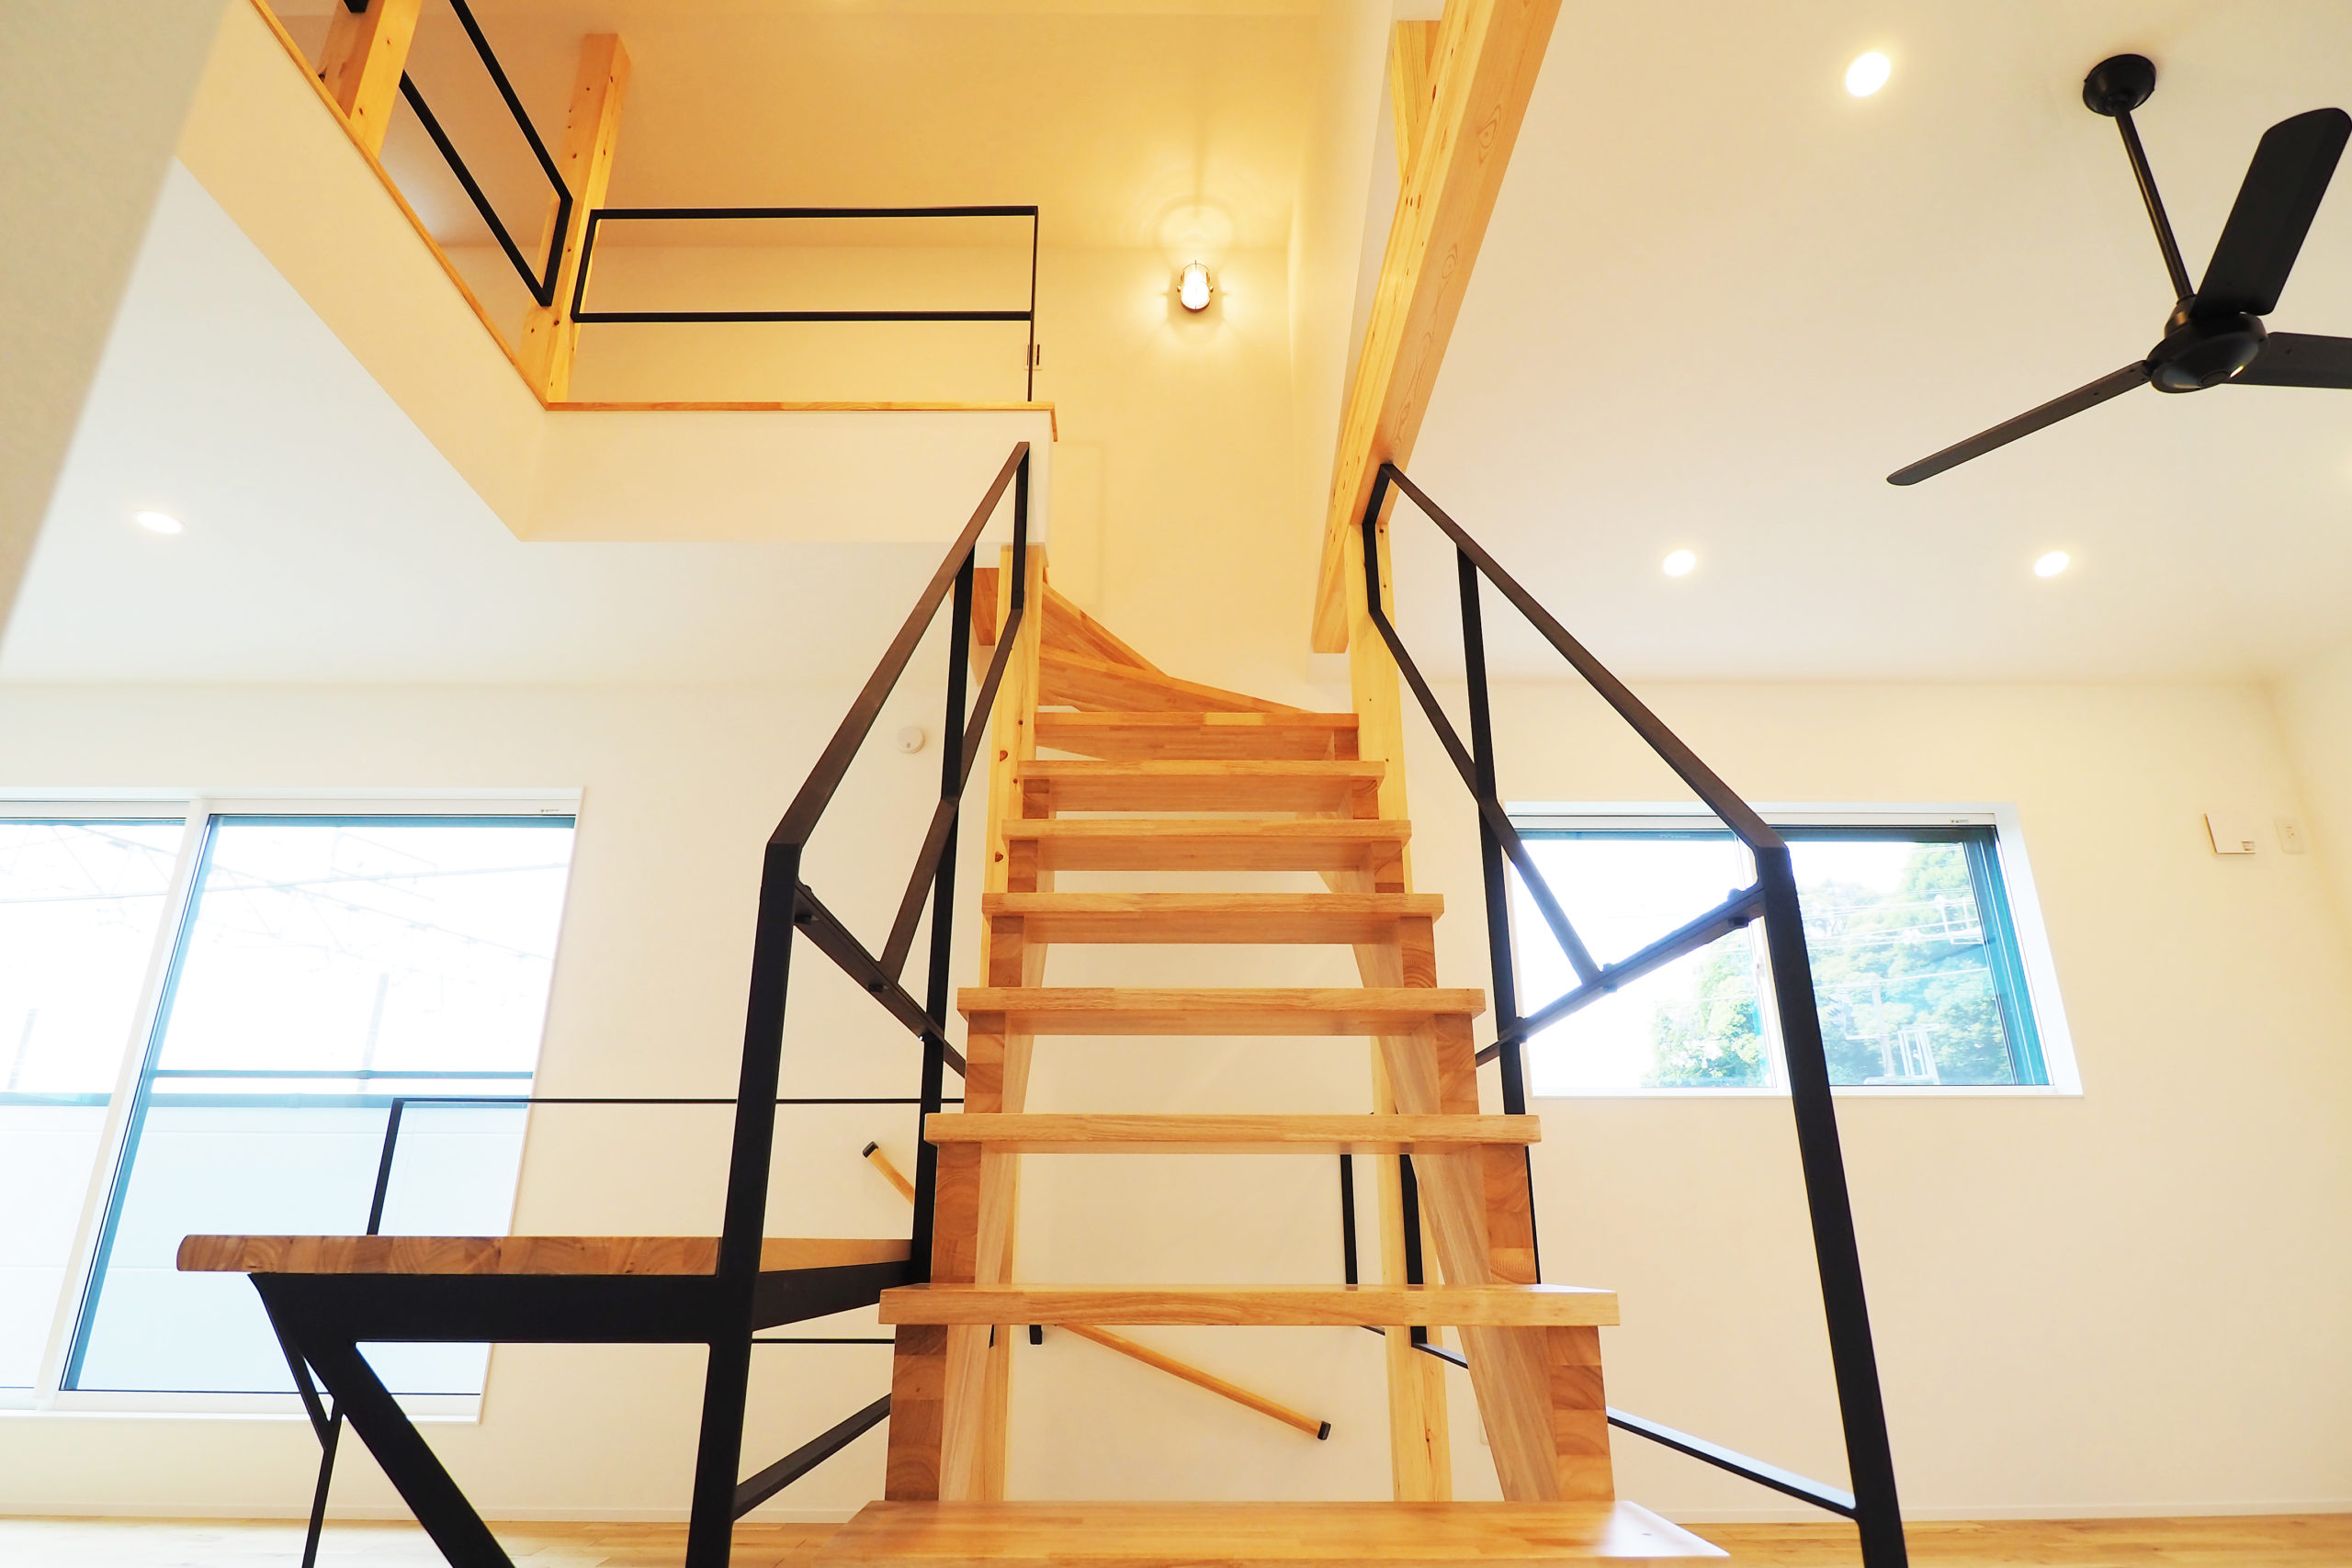 ブラックアイアン手すりと、木製ストリップ階段がカッコいい家